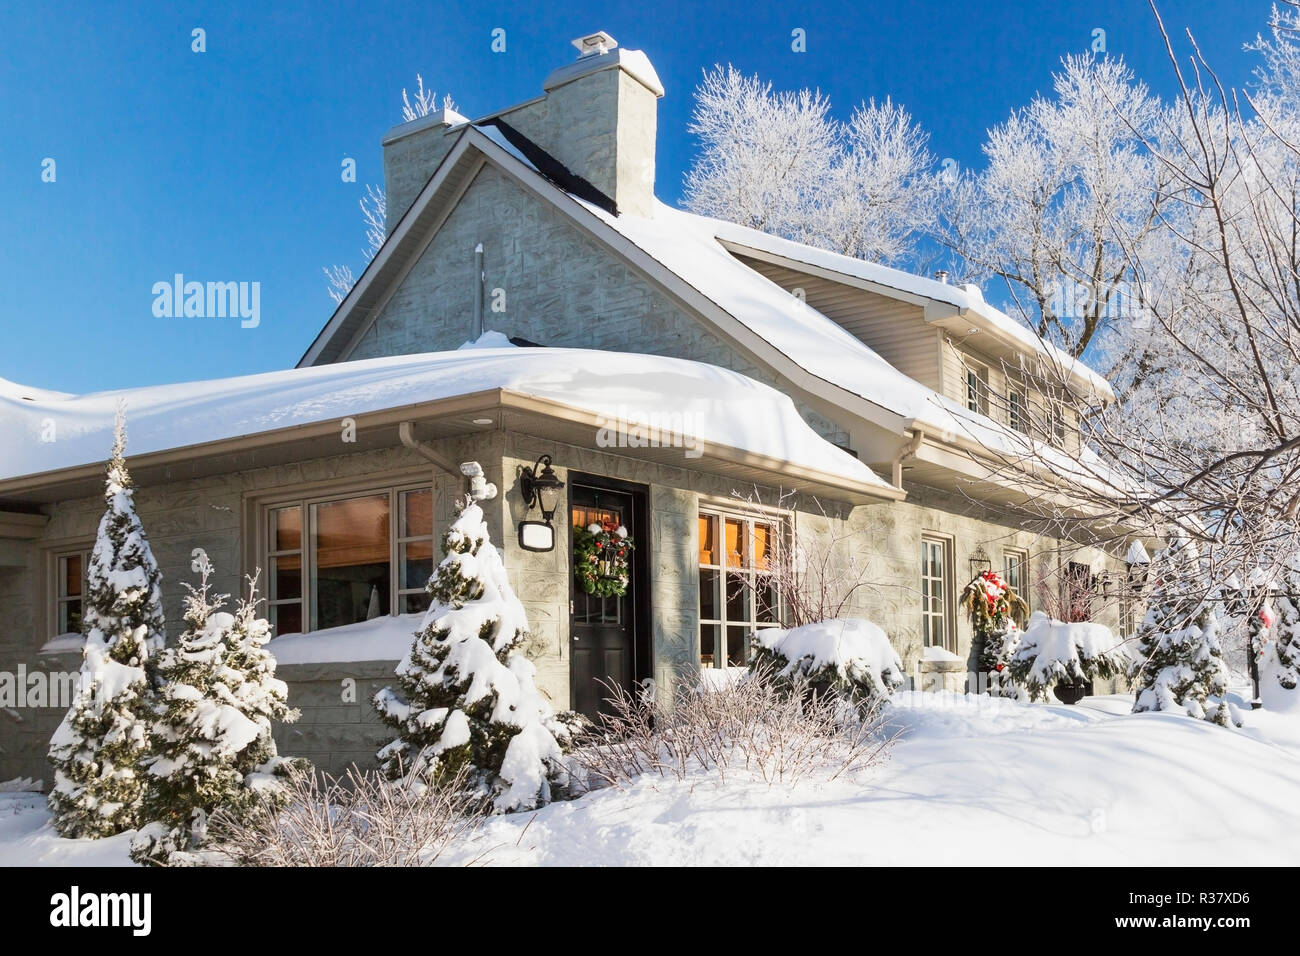 Alte 1840s Home Fassade mit grauen Stein Mauerwerk und Holz Verschalungen plus Weihnachtsschmuck im Winter, Quebec, Kanada Stockfoto